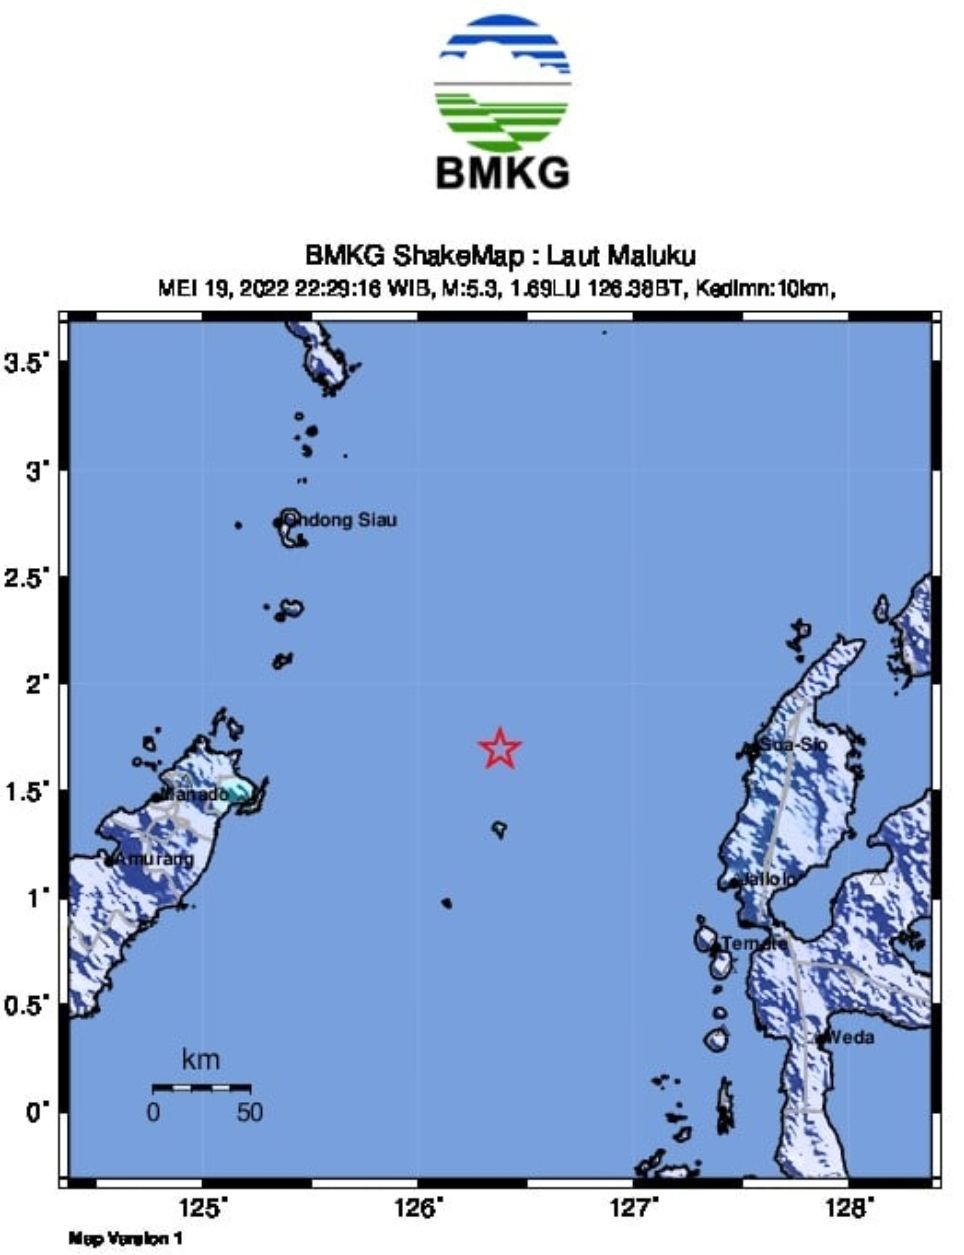 Pusat gempa yang terjadi di wilayah Laut Maluku pada hari ini, Kamis malam 19 Mei 2022 memiliki magnitudo 5,5 yang dimutakhirkan BMKG menjadi magnitudo 5,3